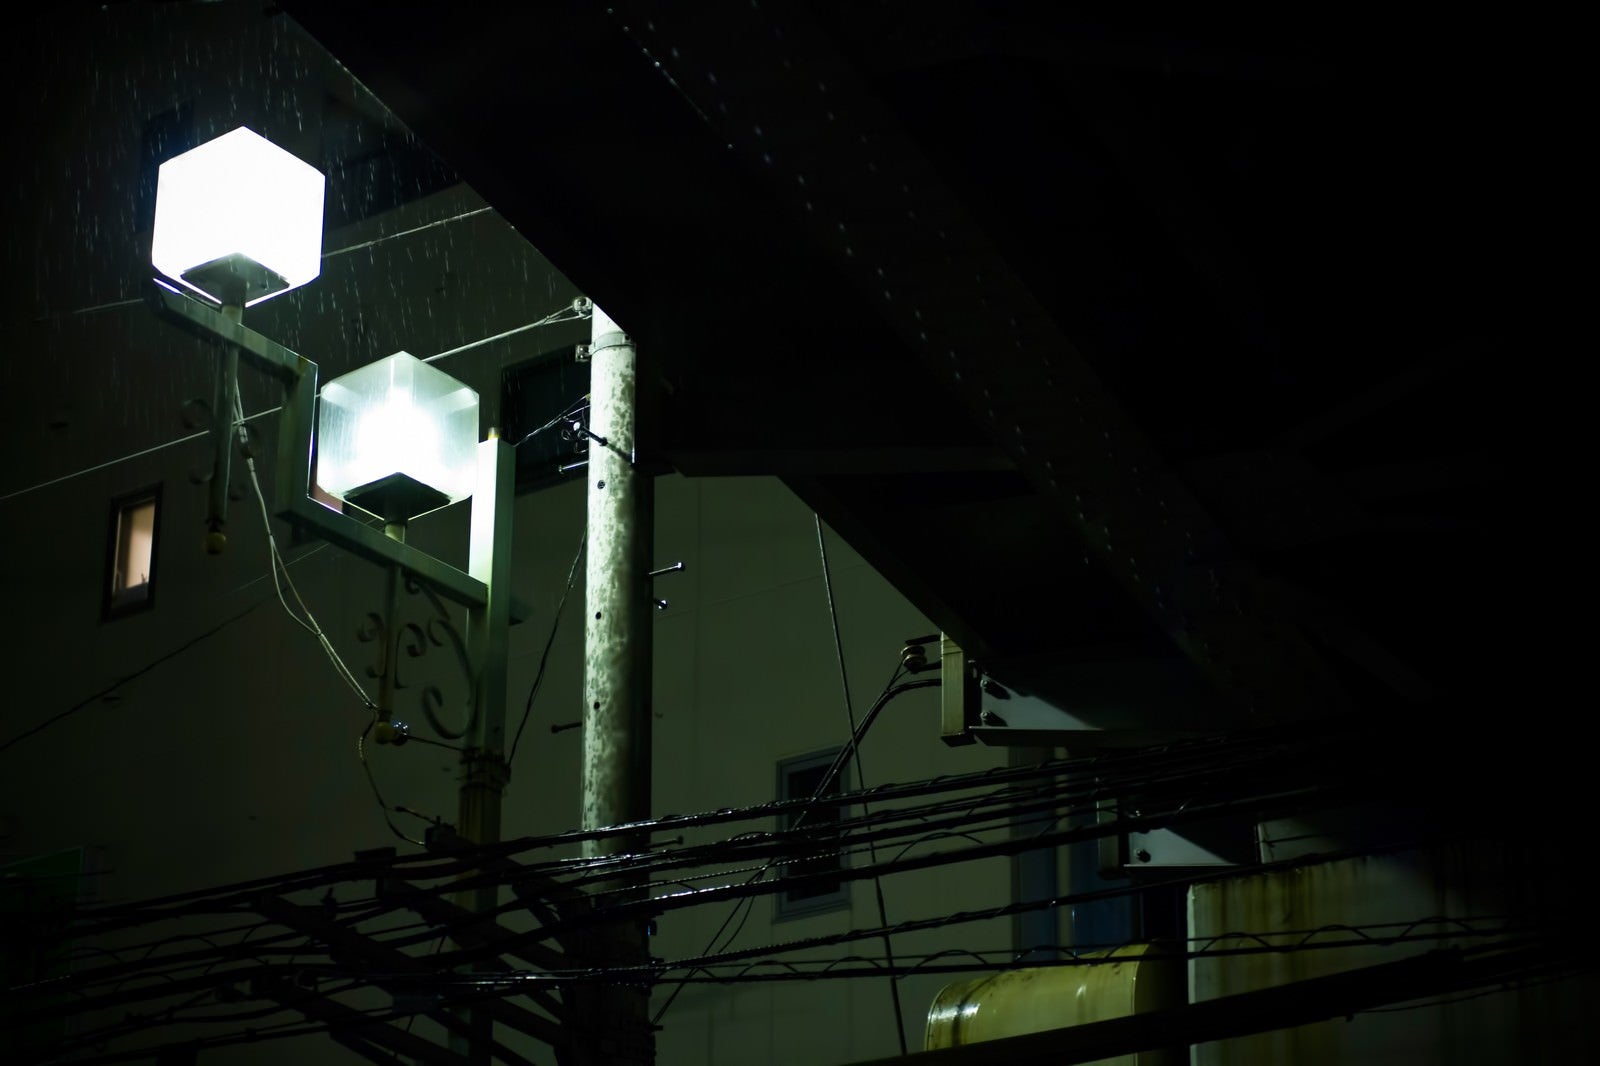 「高架下の街灯と雨」の写真